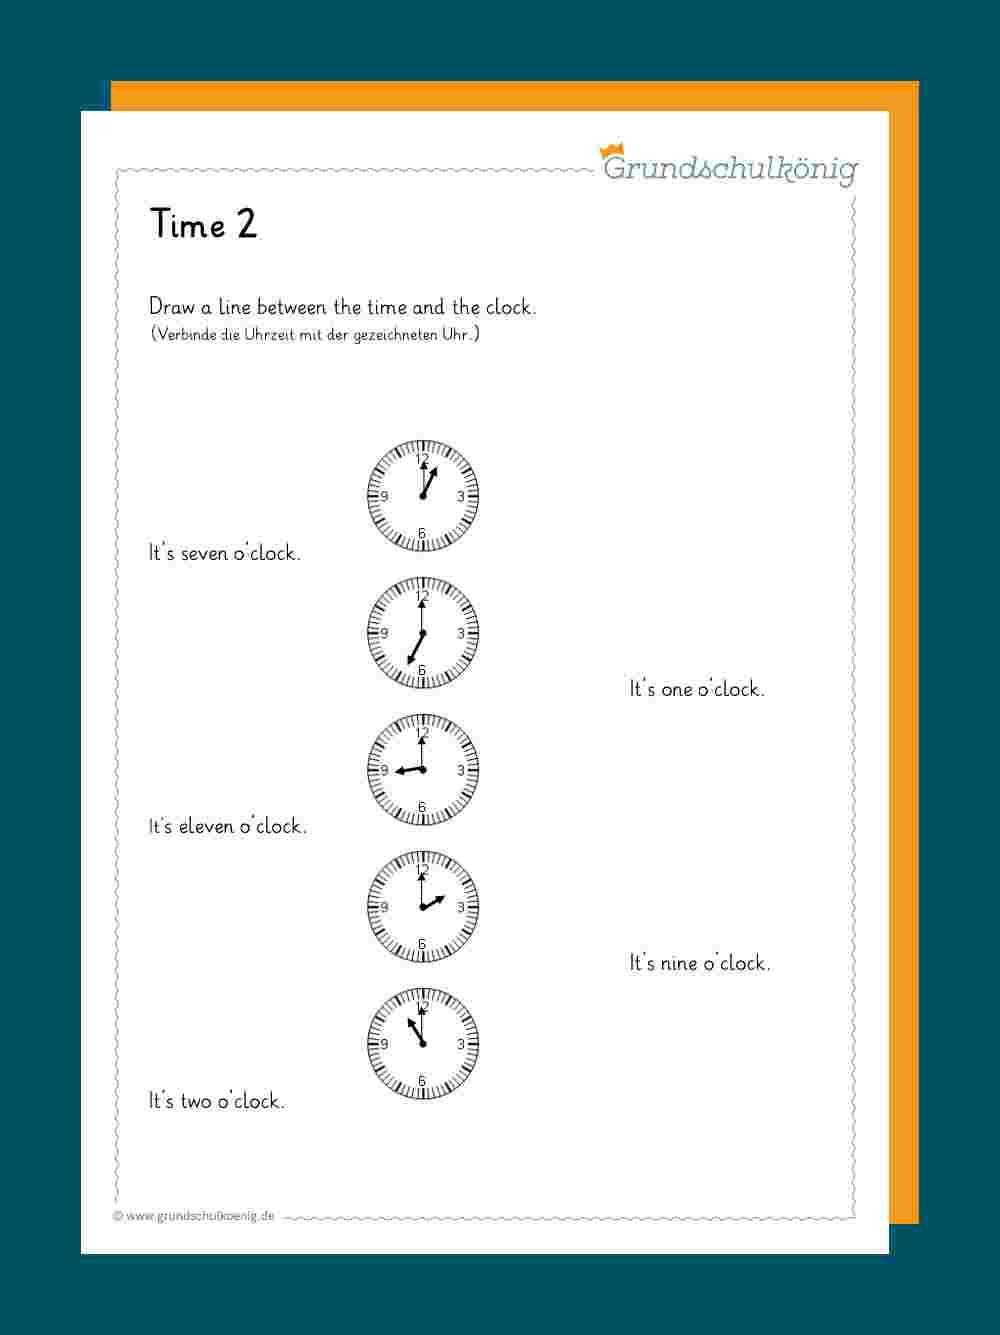 Time / Uhrzeit in Uhr Grundschule Arbeitsblätter